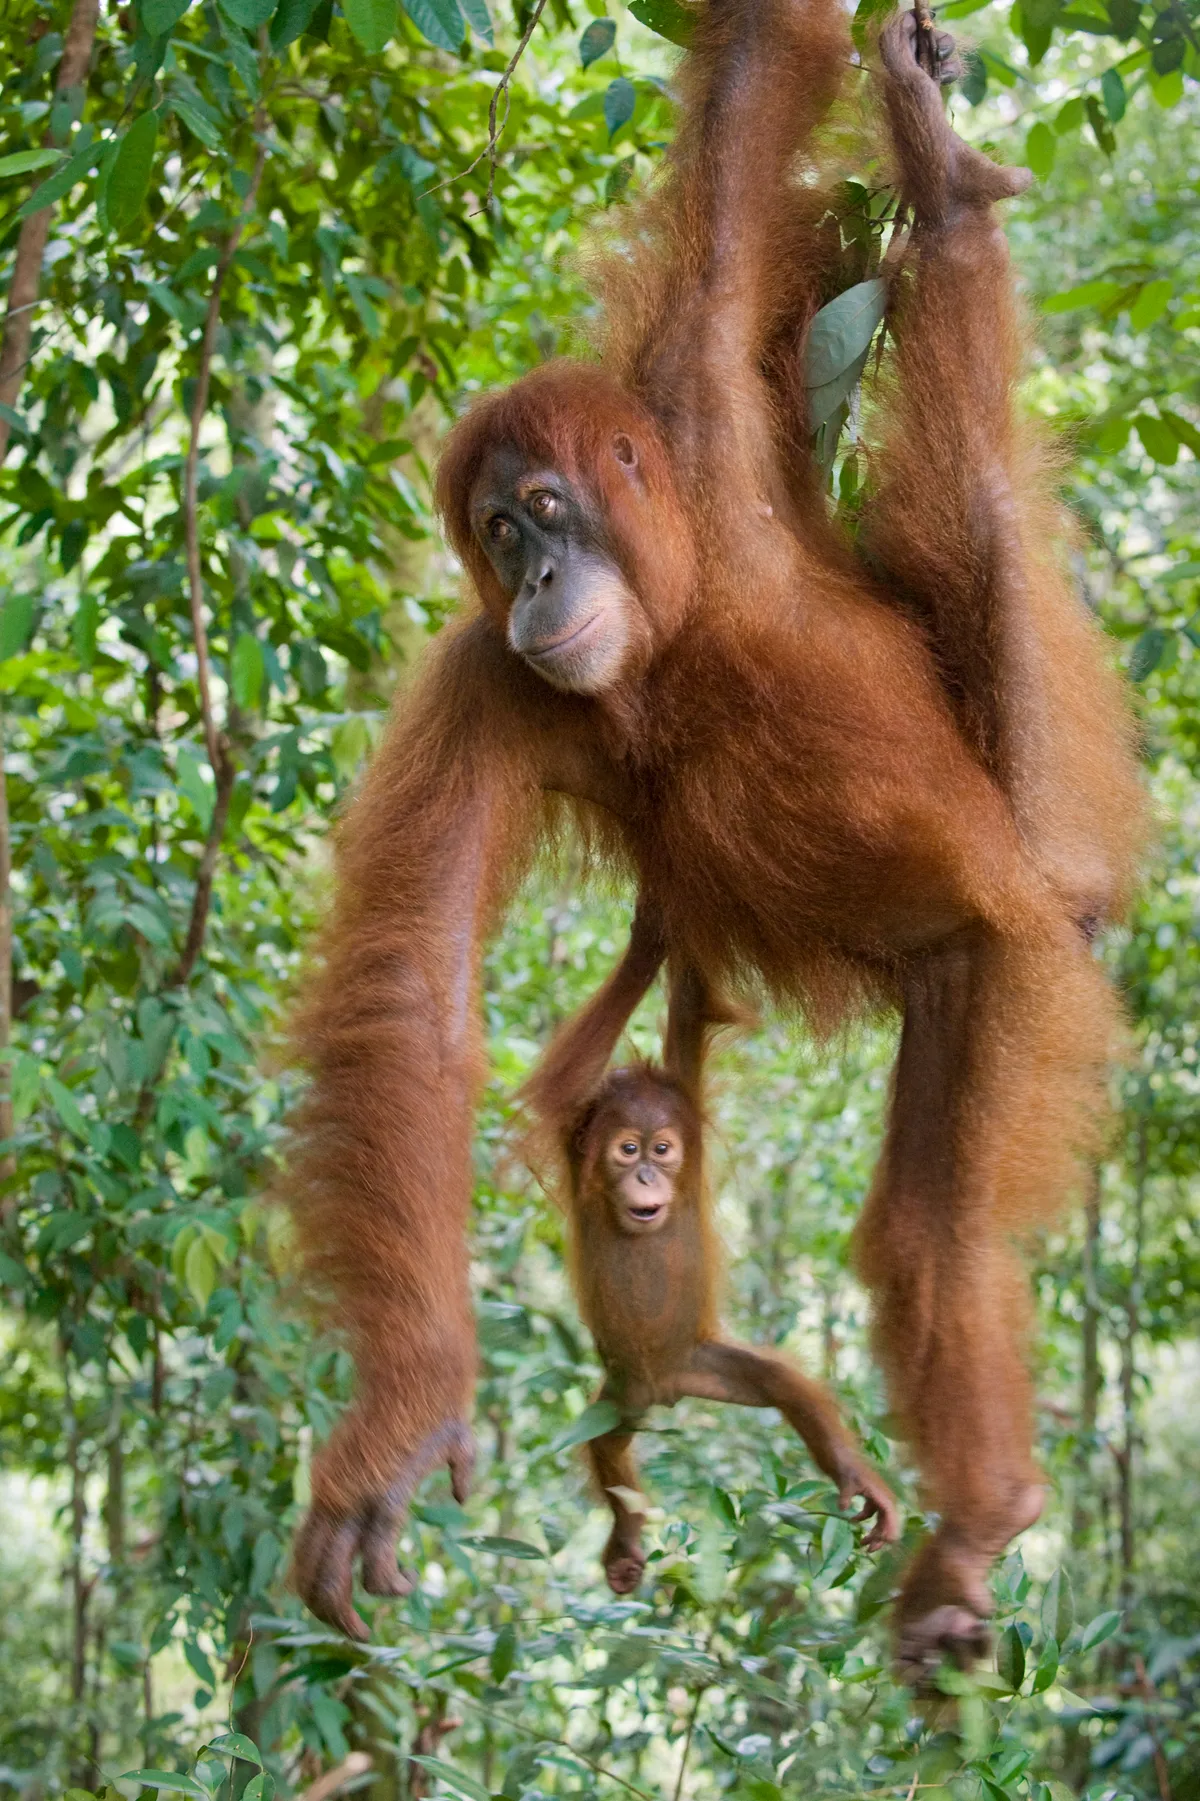 Sumatran orangutan in Gunung Leuser National Park, Sumatra, Indonesia. © Suzi Eszterhas (USA)